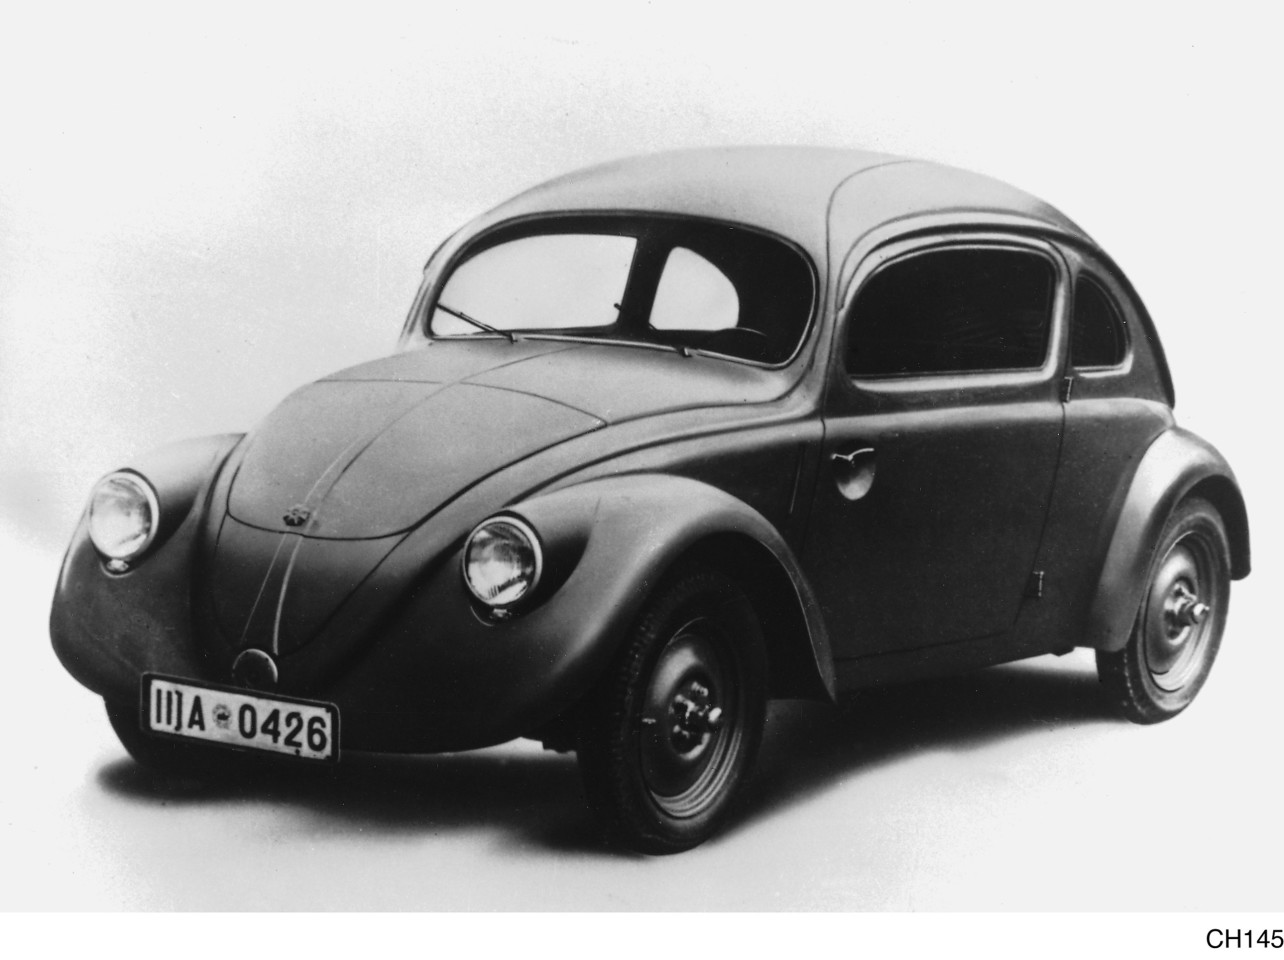 VW 30 prototype from 1937